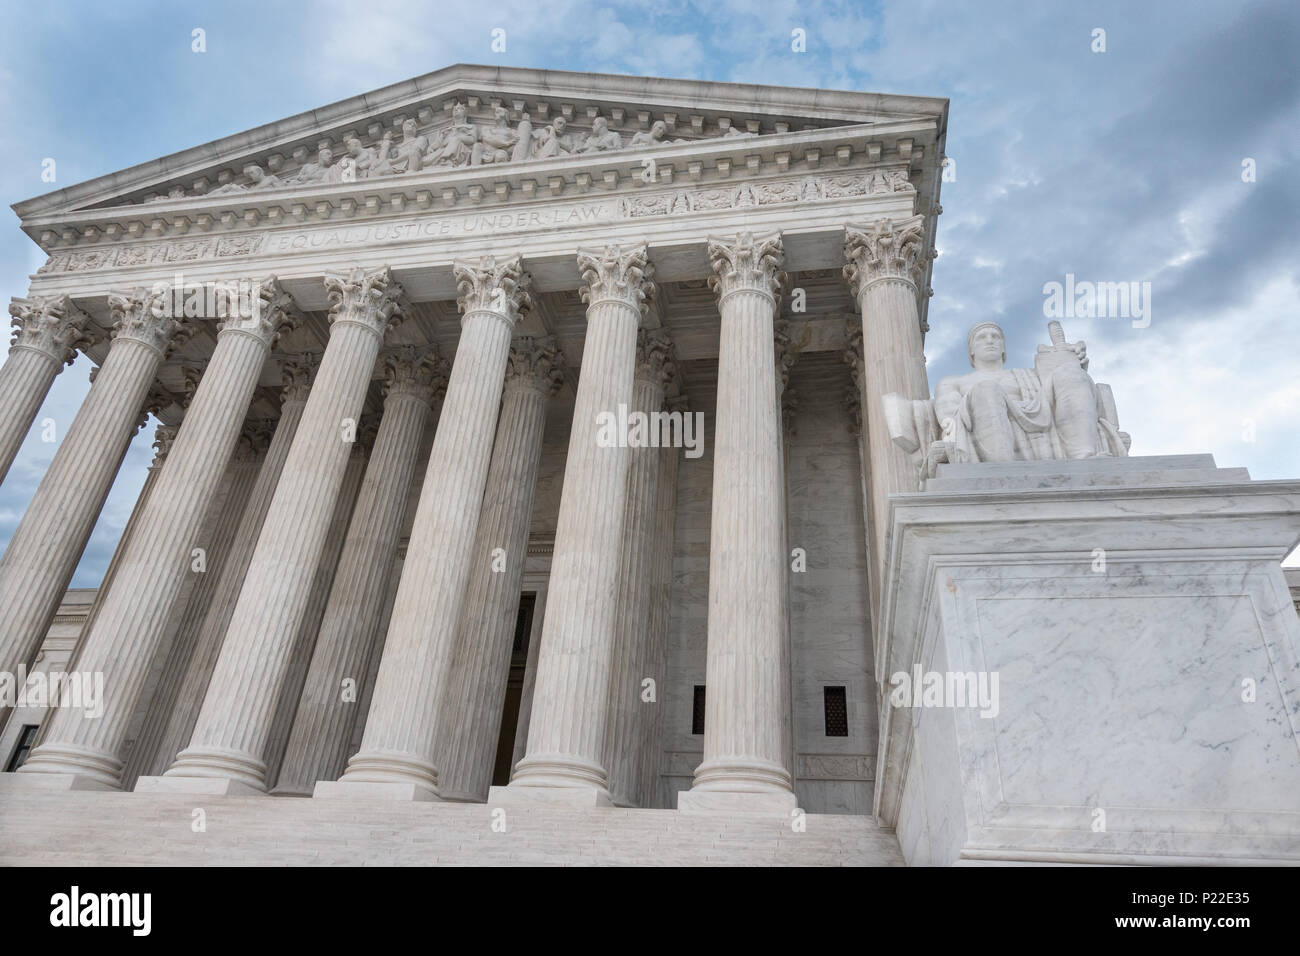 "Igualdad de Justicia bajo la ley' grabado encima de la columna de entrada, edificio de la Corte Suprema de Justicia, en Washington, DC. Autoridad de la Ley estatua en primer plano Foto de stock